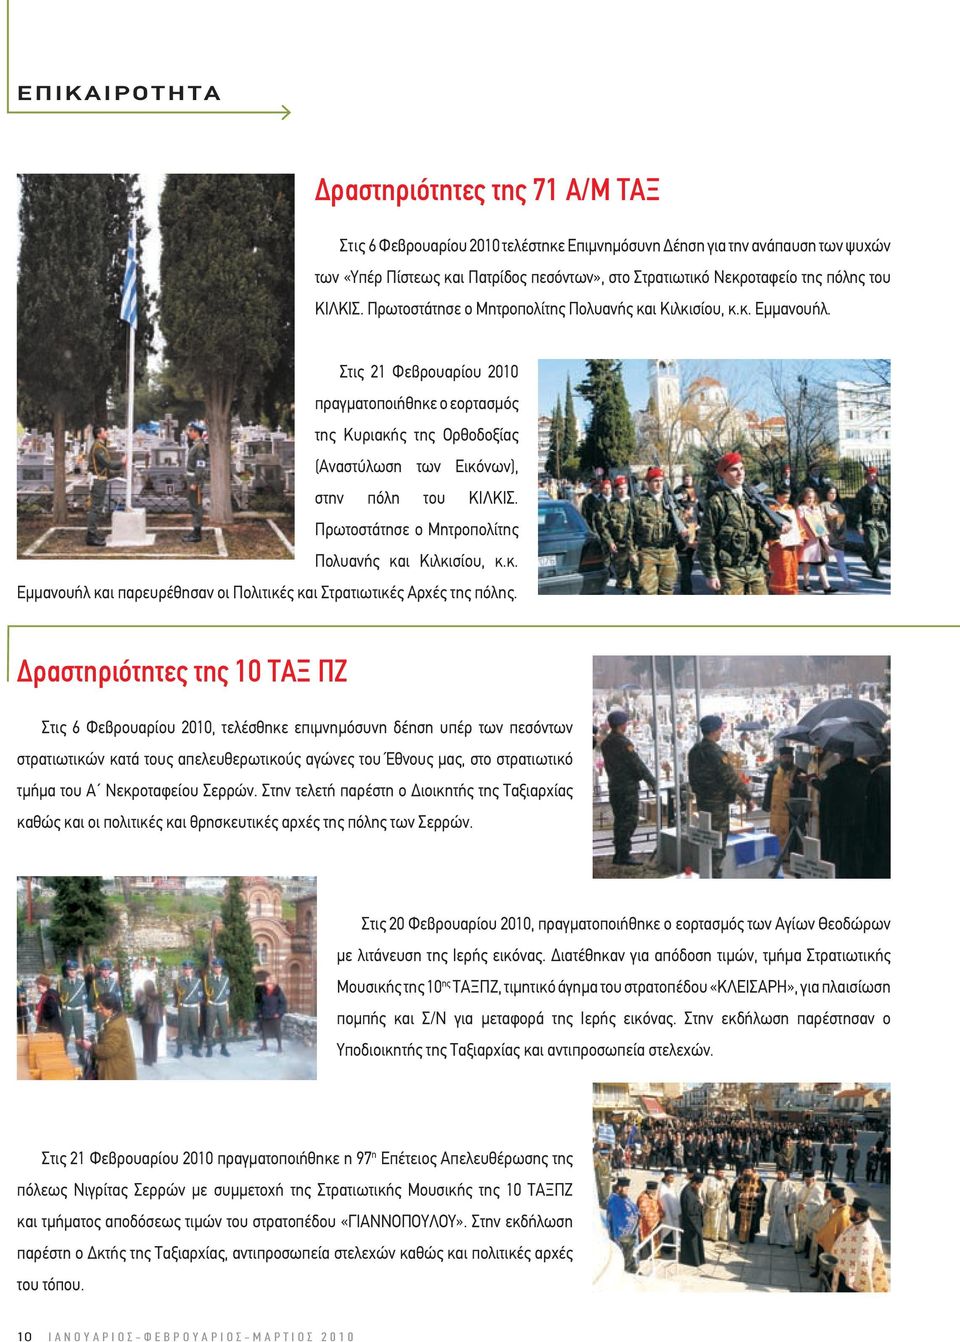 Στις 21 Φεβρουαρίου 2010 πραγµατοποιήθηκε ο εορτασµός της Κυριακής της Ορθοδοξίας (Αναστύλωση των Εικόνων), στην πόλη του ΚΙΛΚΙΣ. Πρωτοστάτησε ο Μητροπολίτης Πολυανής και Κιλκισίου, κ.κ. Εµµανουήλ και παρευρέθησαν οι Πολιτικές και Στρατιωτικές Αρχές της πόλης.